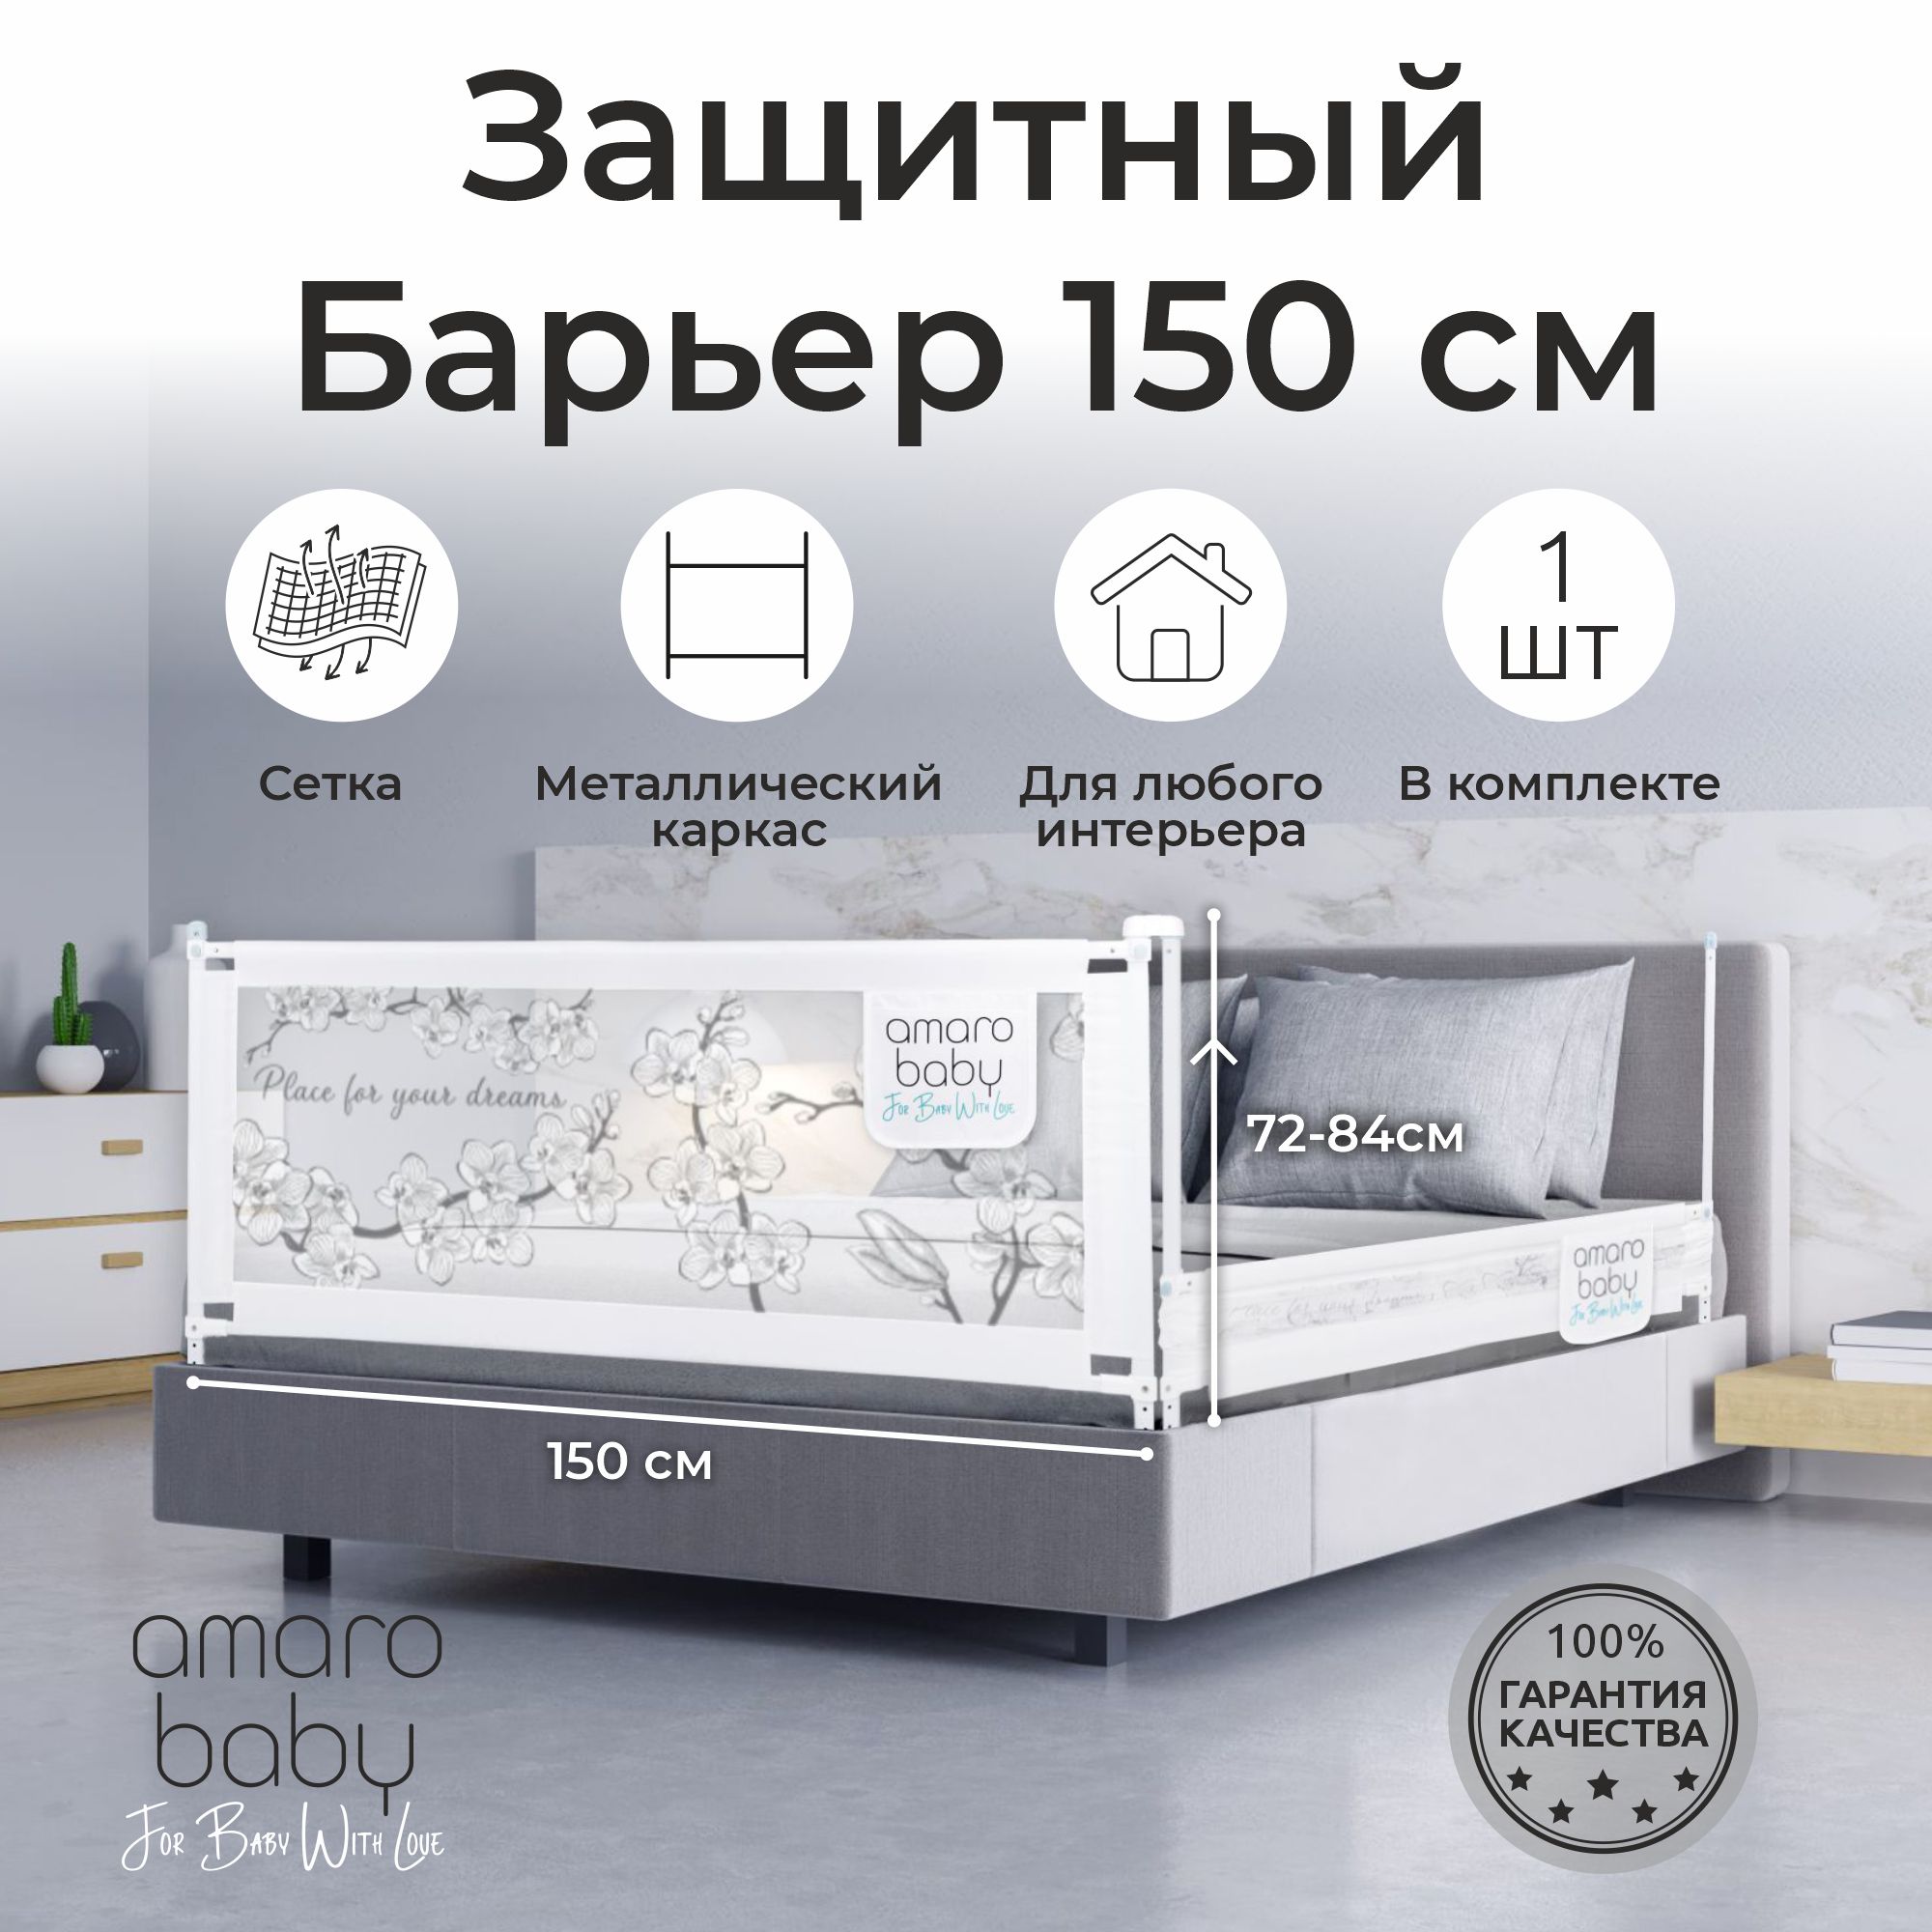 Барьер защитный для кровати AMAROBABY safety of dreams, 150 см, ограничитель-безопасности